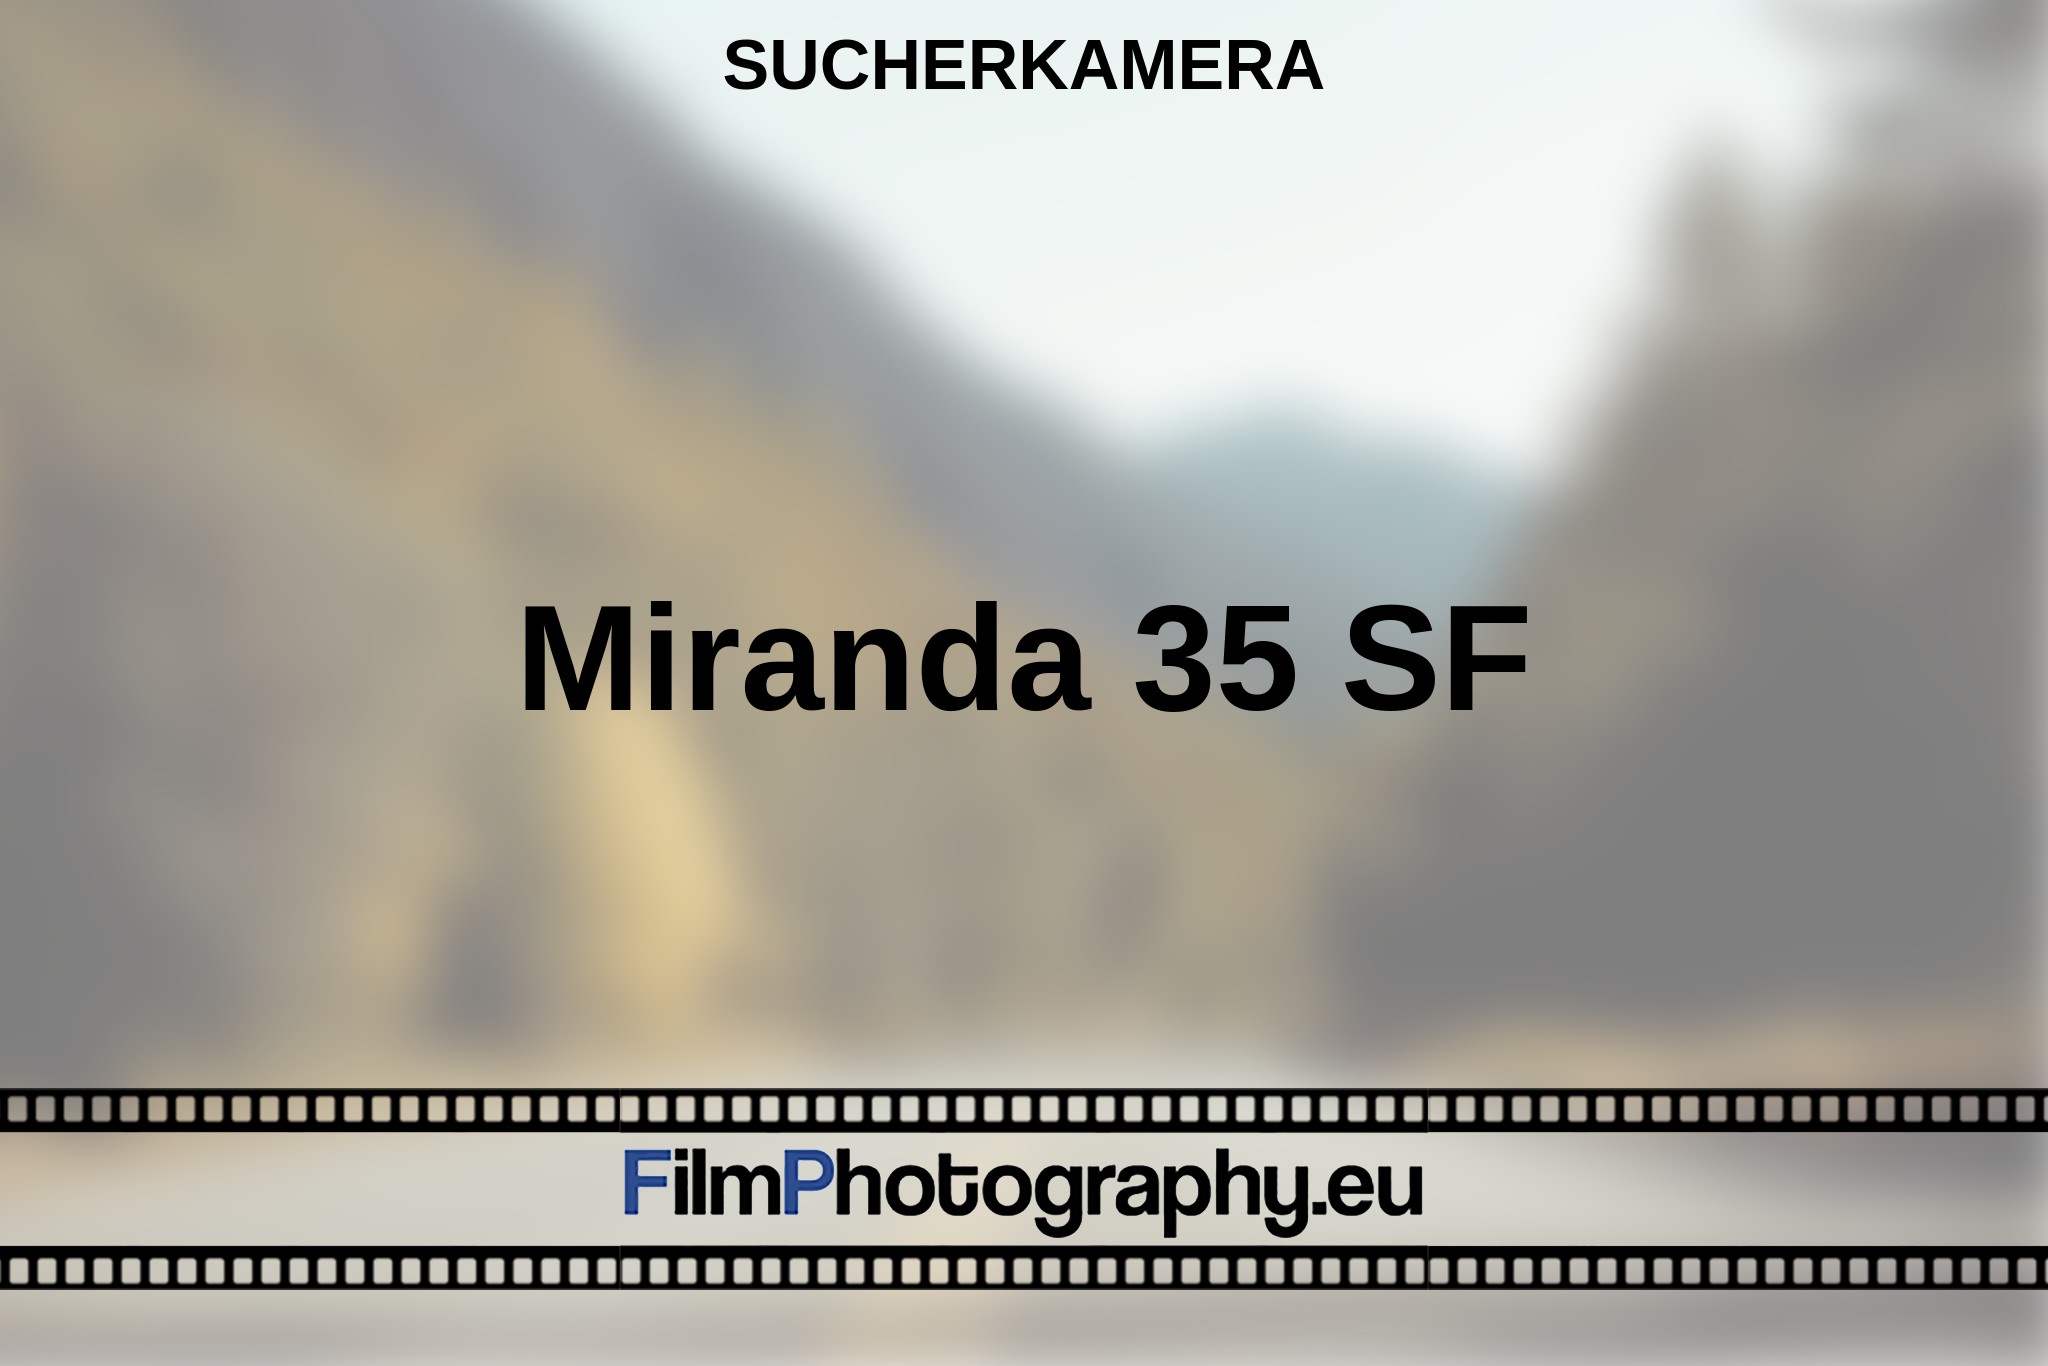 miranda-35-sf-sucherkamera-bnv.jpg